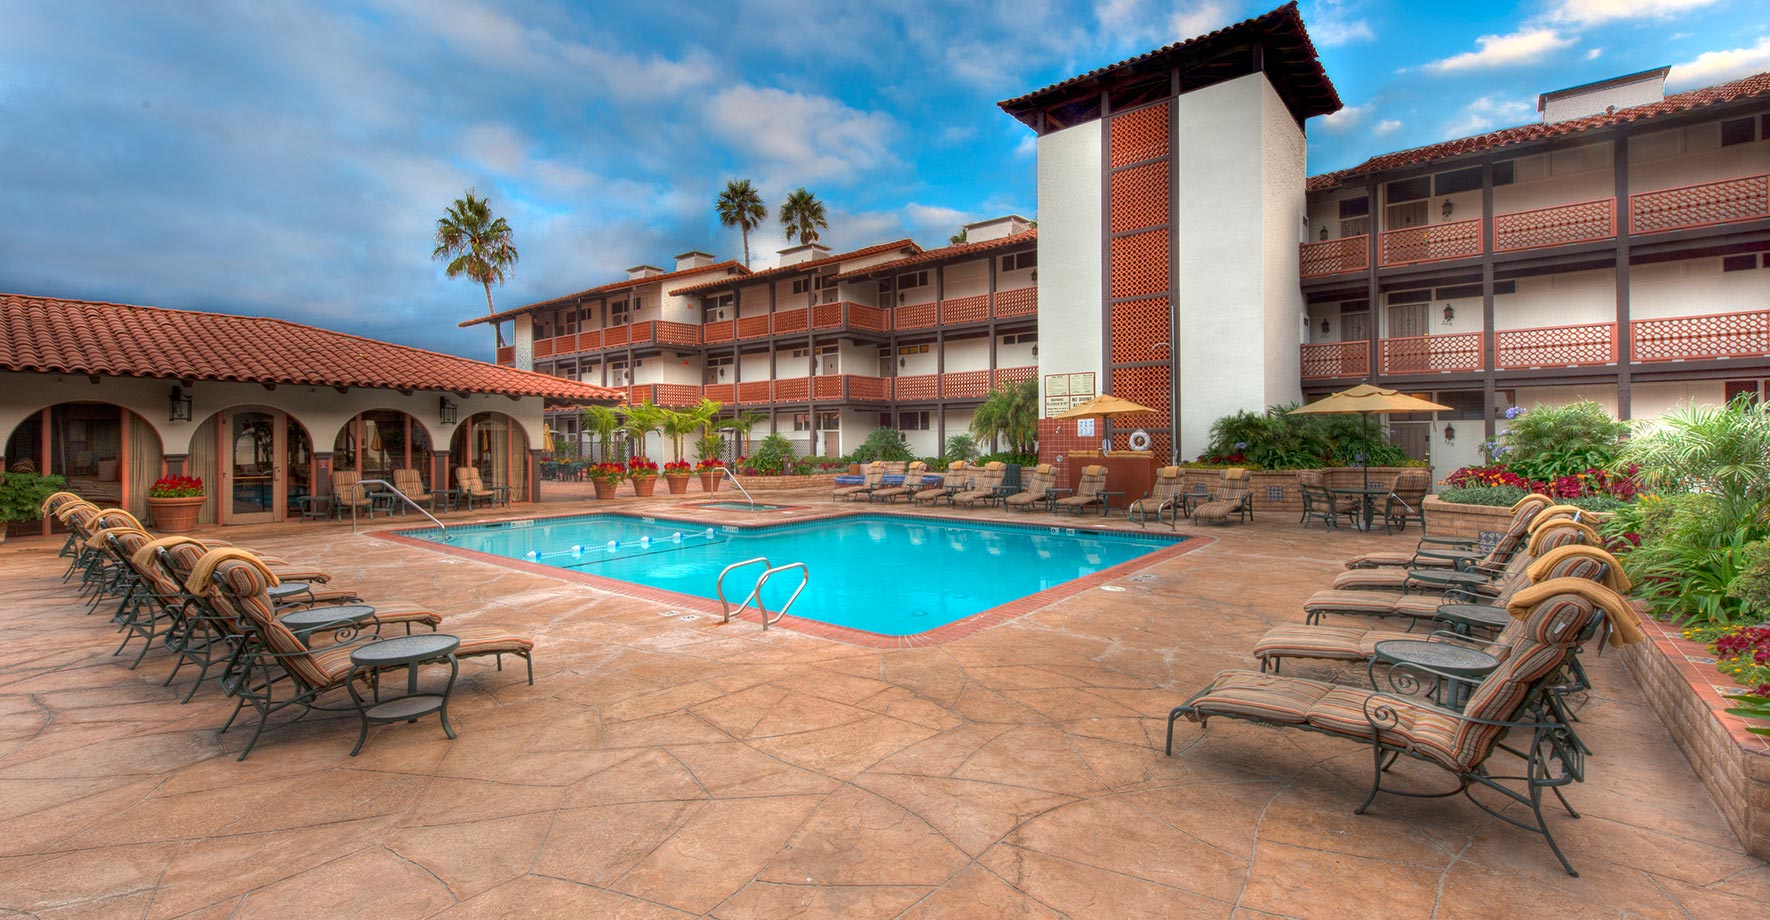 La Jolla Shores Hotel, San Diego